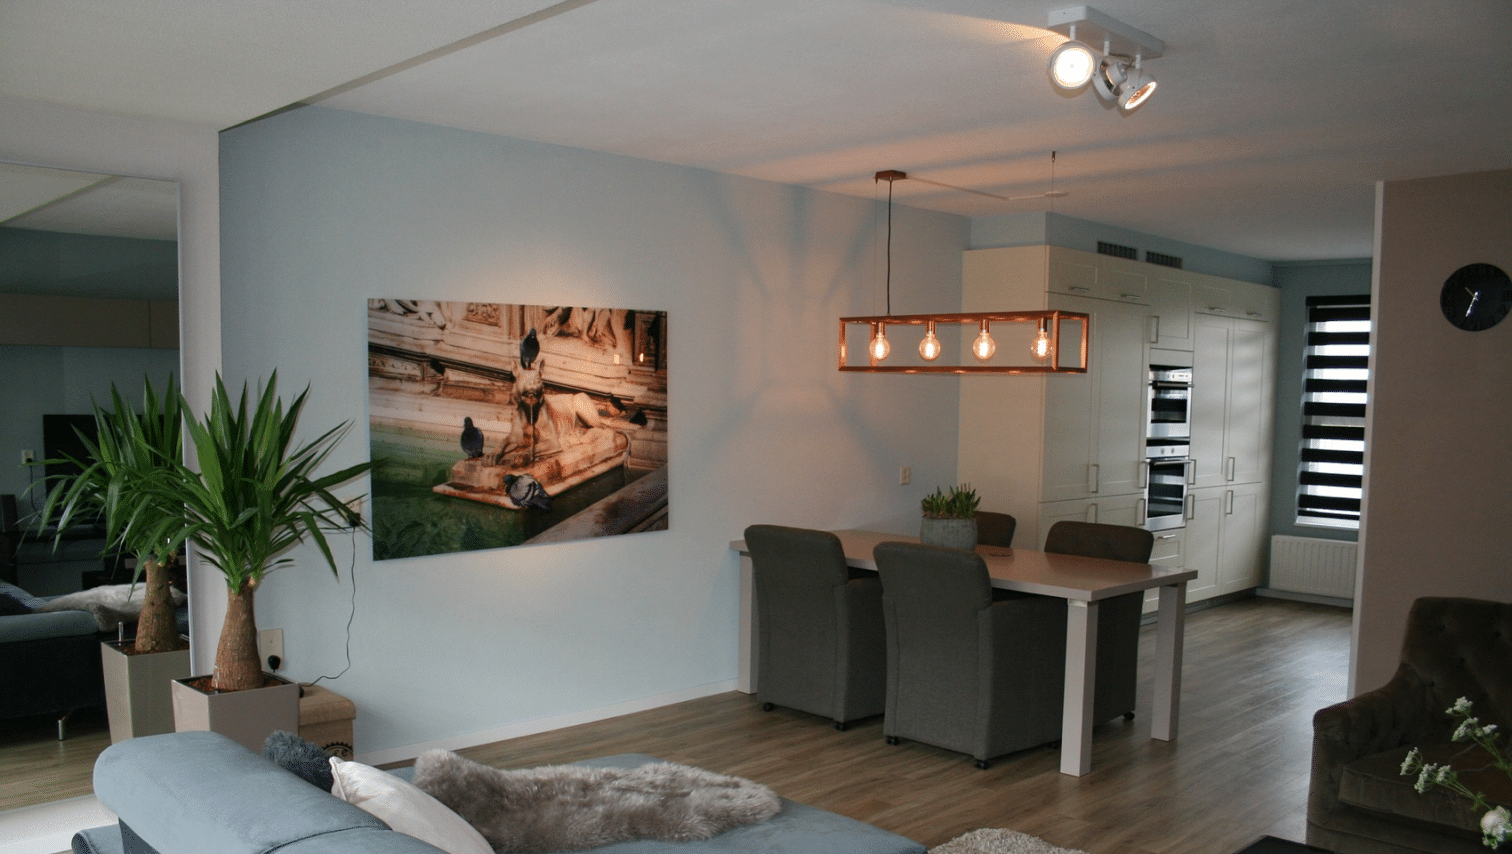 Thomsen & Fals hjælper med alt installation af lys i hjemmet i Aalborg